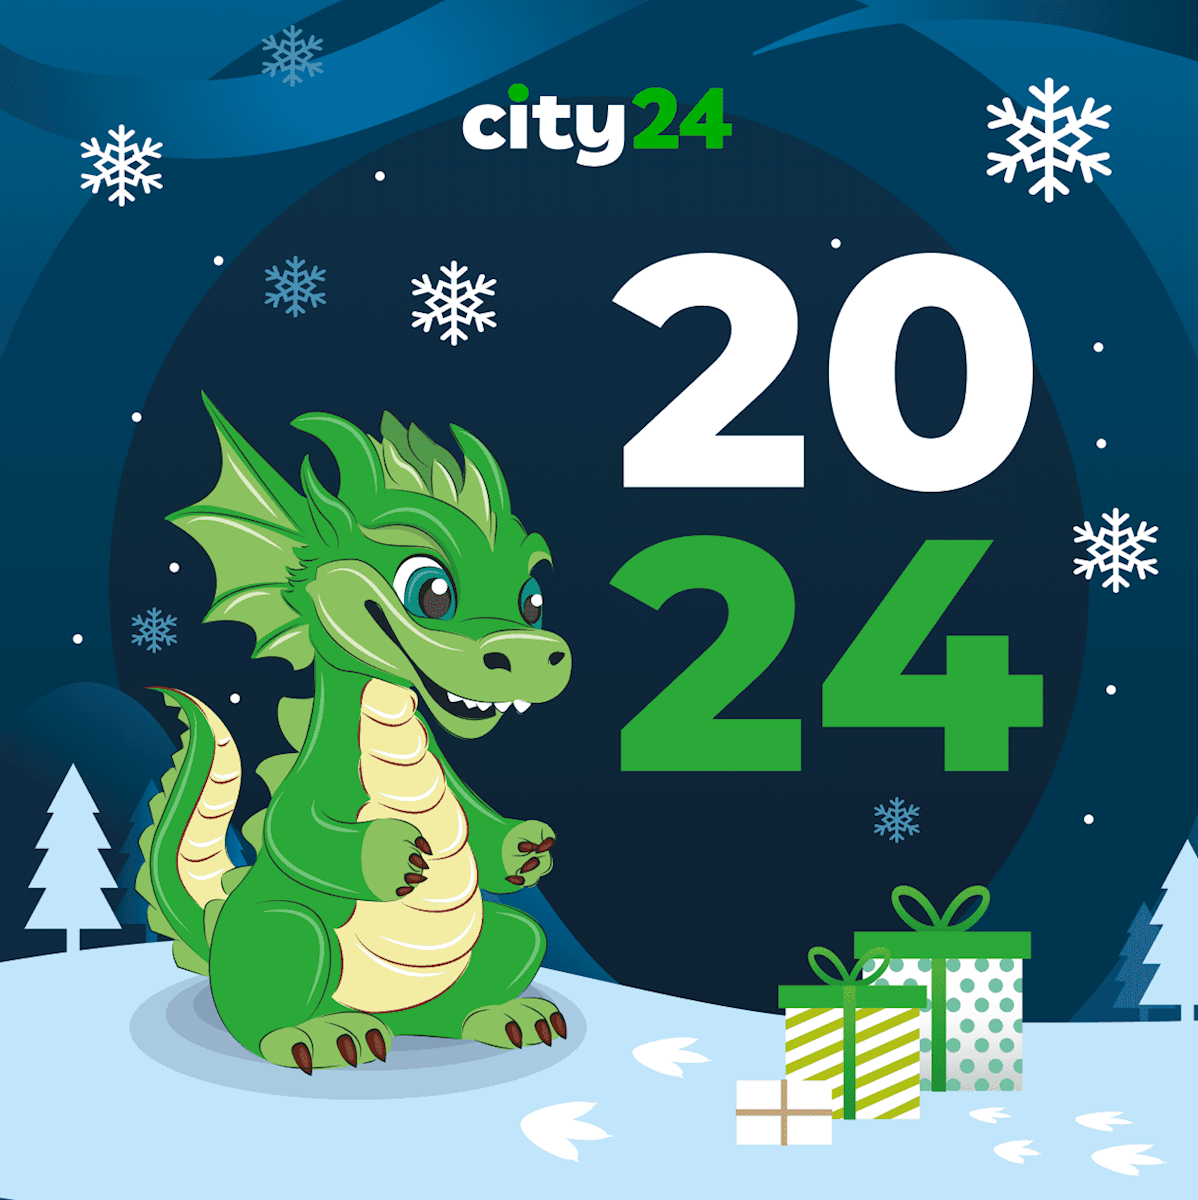 city24 поздравляет всех с Новым годом и Рождеством Христовым!